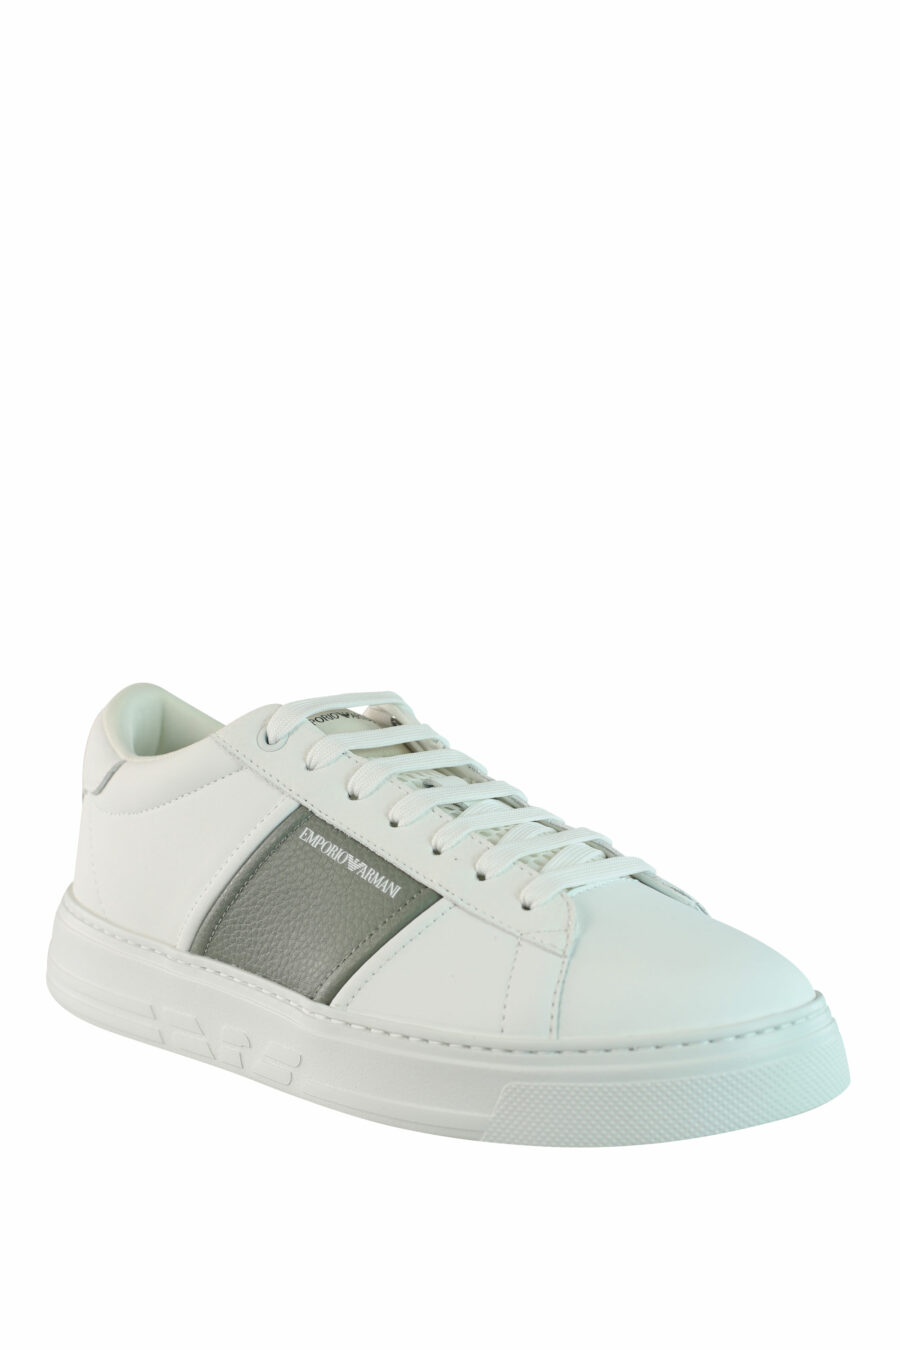 Zapatillas blancas con gris y minilogo - IMG 0893